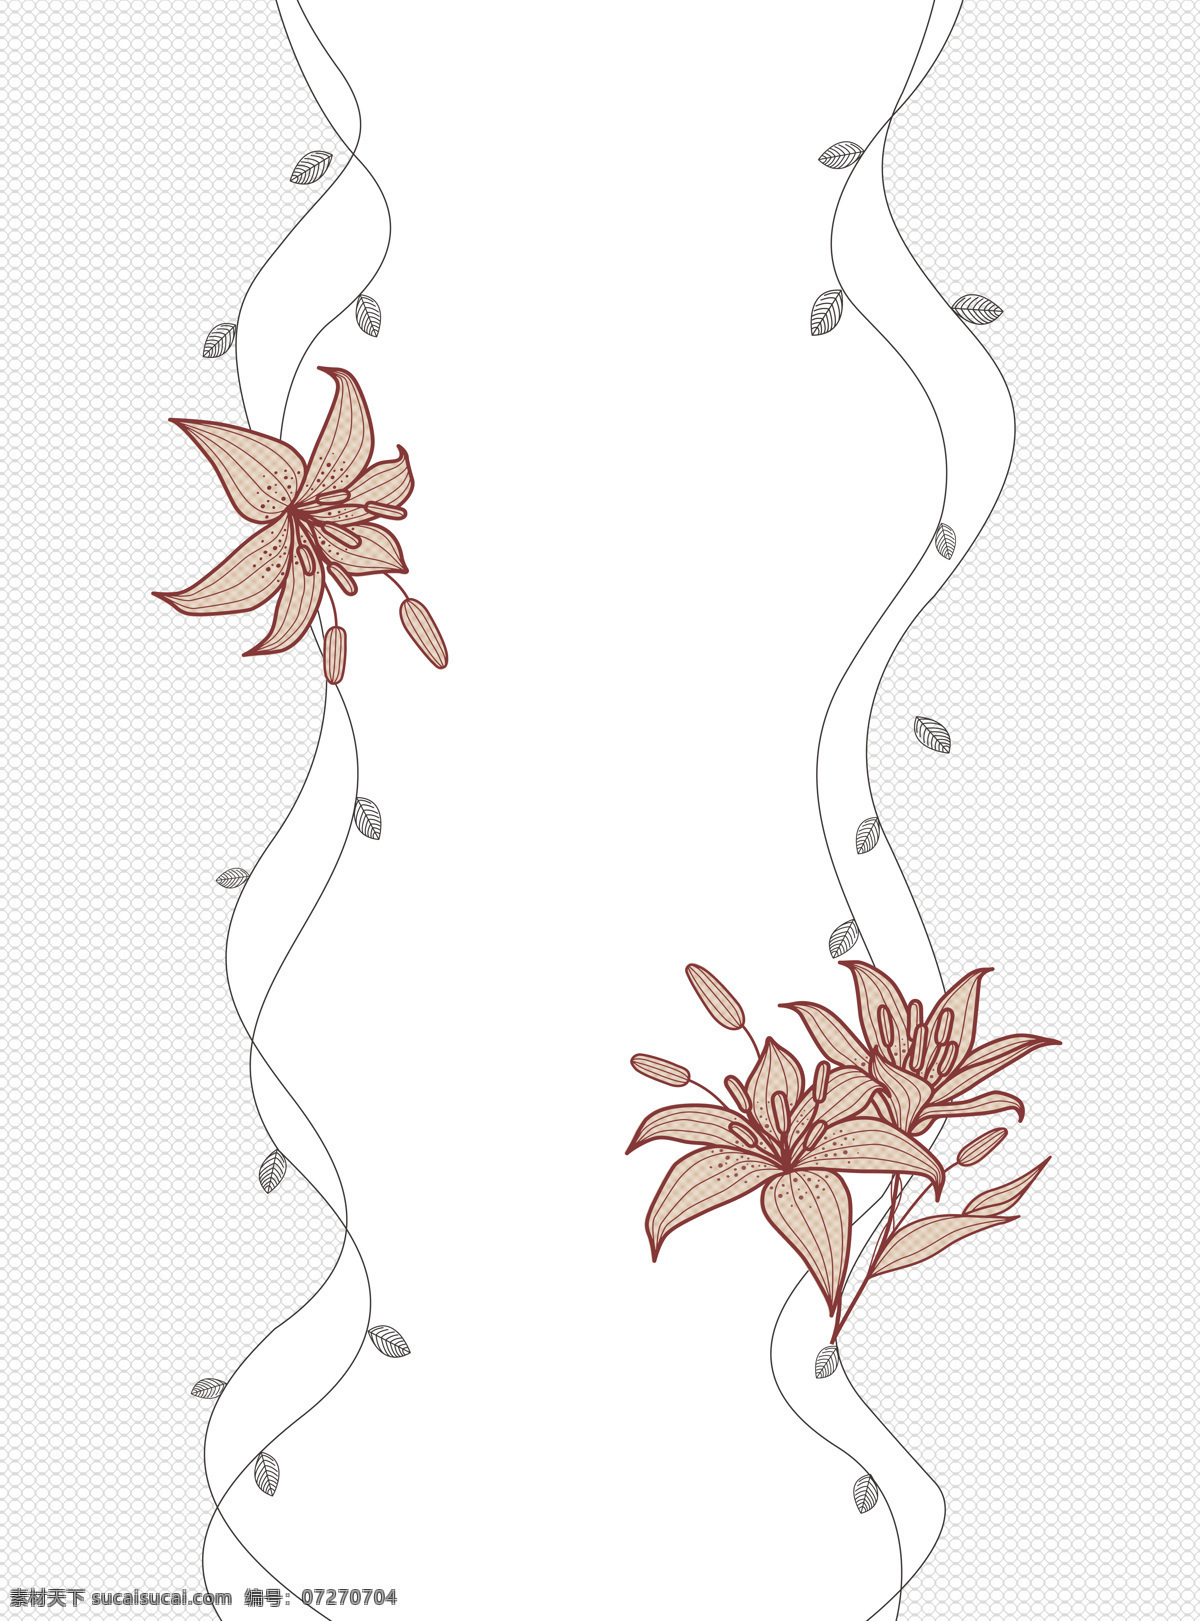 枫叶花边 枫叶 花边 线条 淡灰色块 花朵 移门图片 移门图案